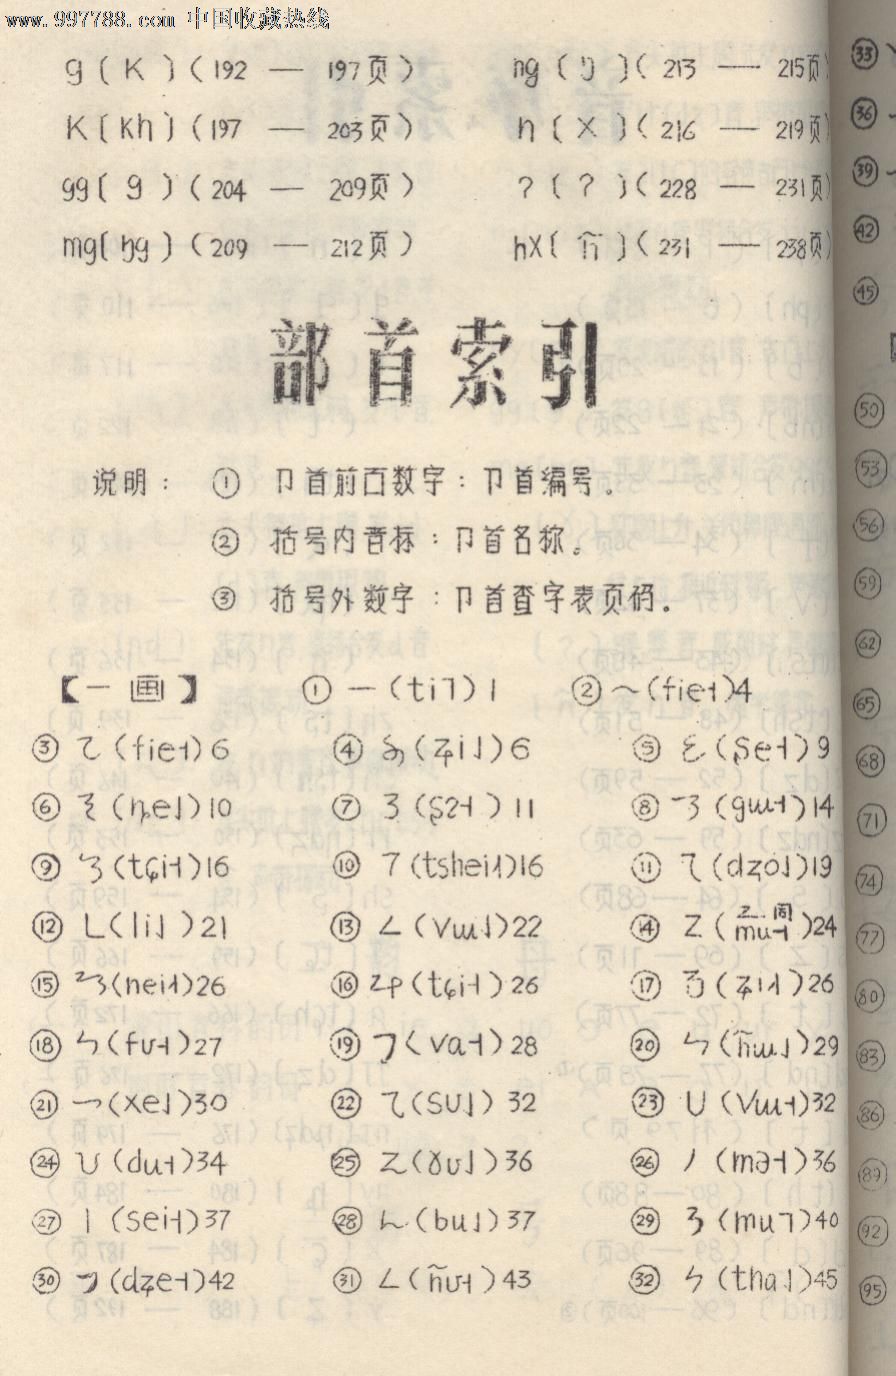 彝文字典(1978年初稿)16开油刻本